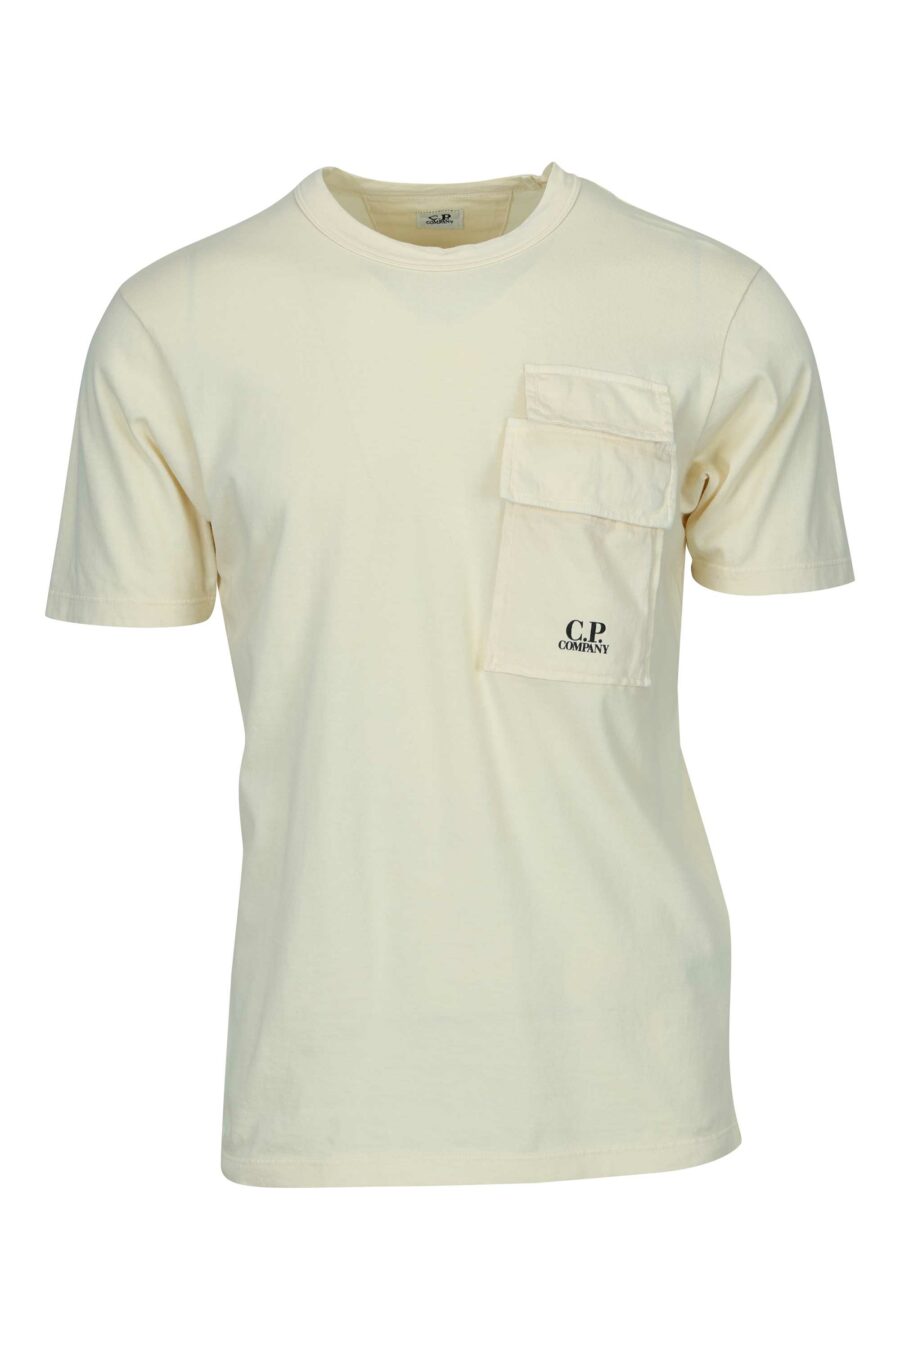 Camiseta beige con bolsillos y minilogo "cp" - 7620943766882